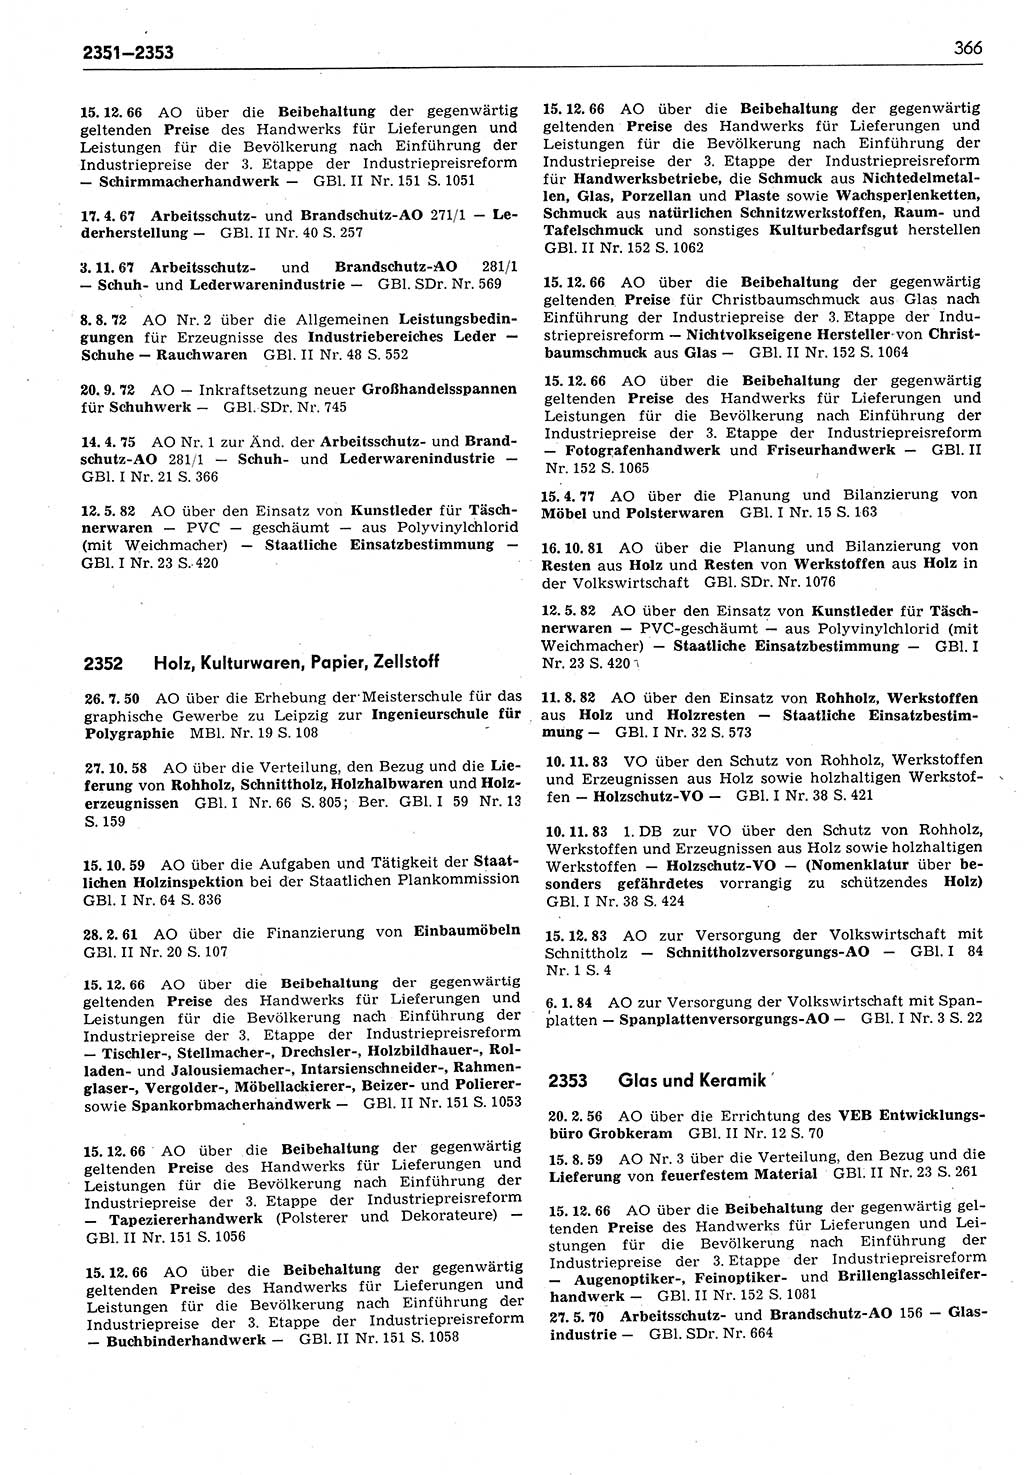 Das geltende Recht der Deutschen Demokratischen Republik (DDR) 1949-1988, Seite 366 (Gelt. R. DDR 1949-1988, S. 366)